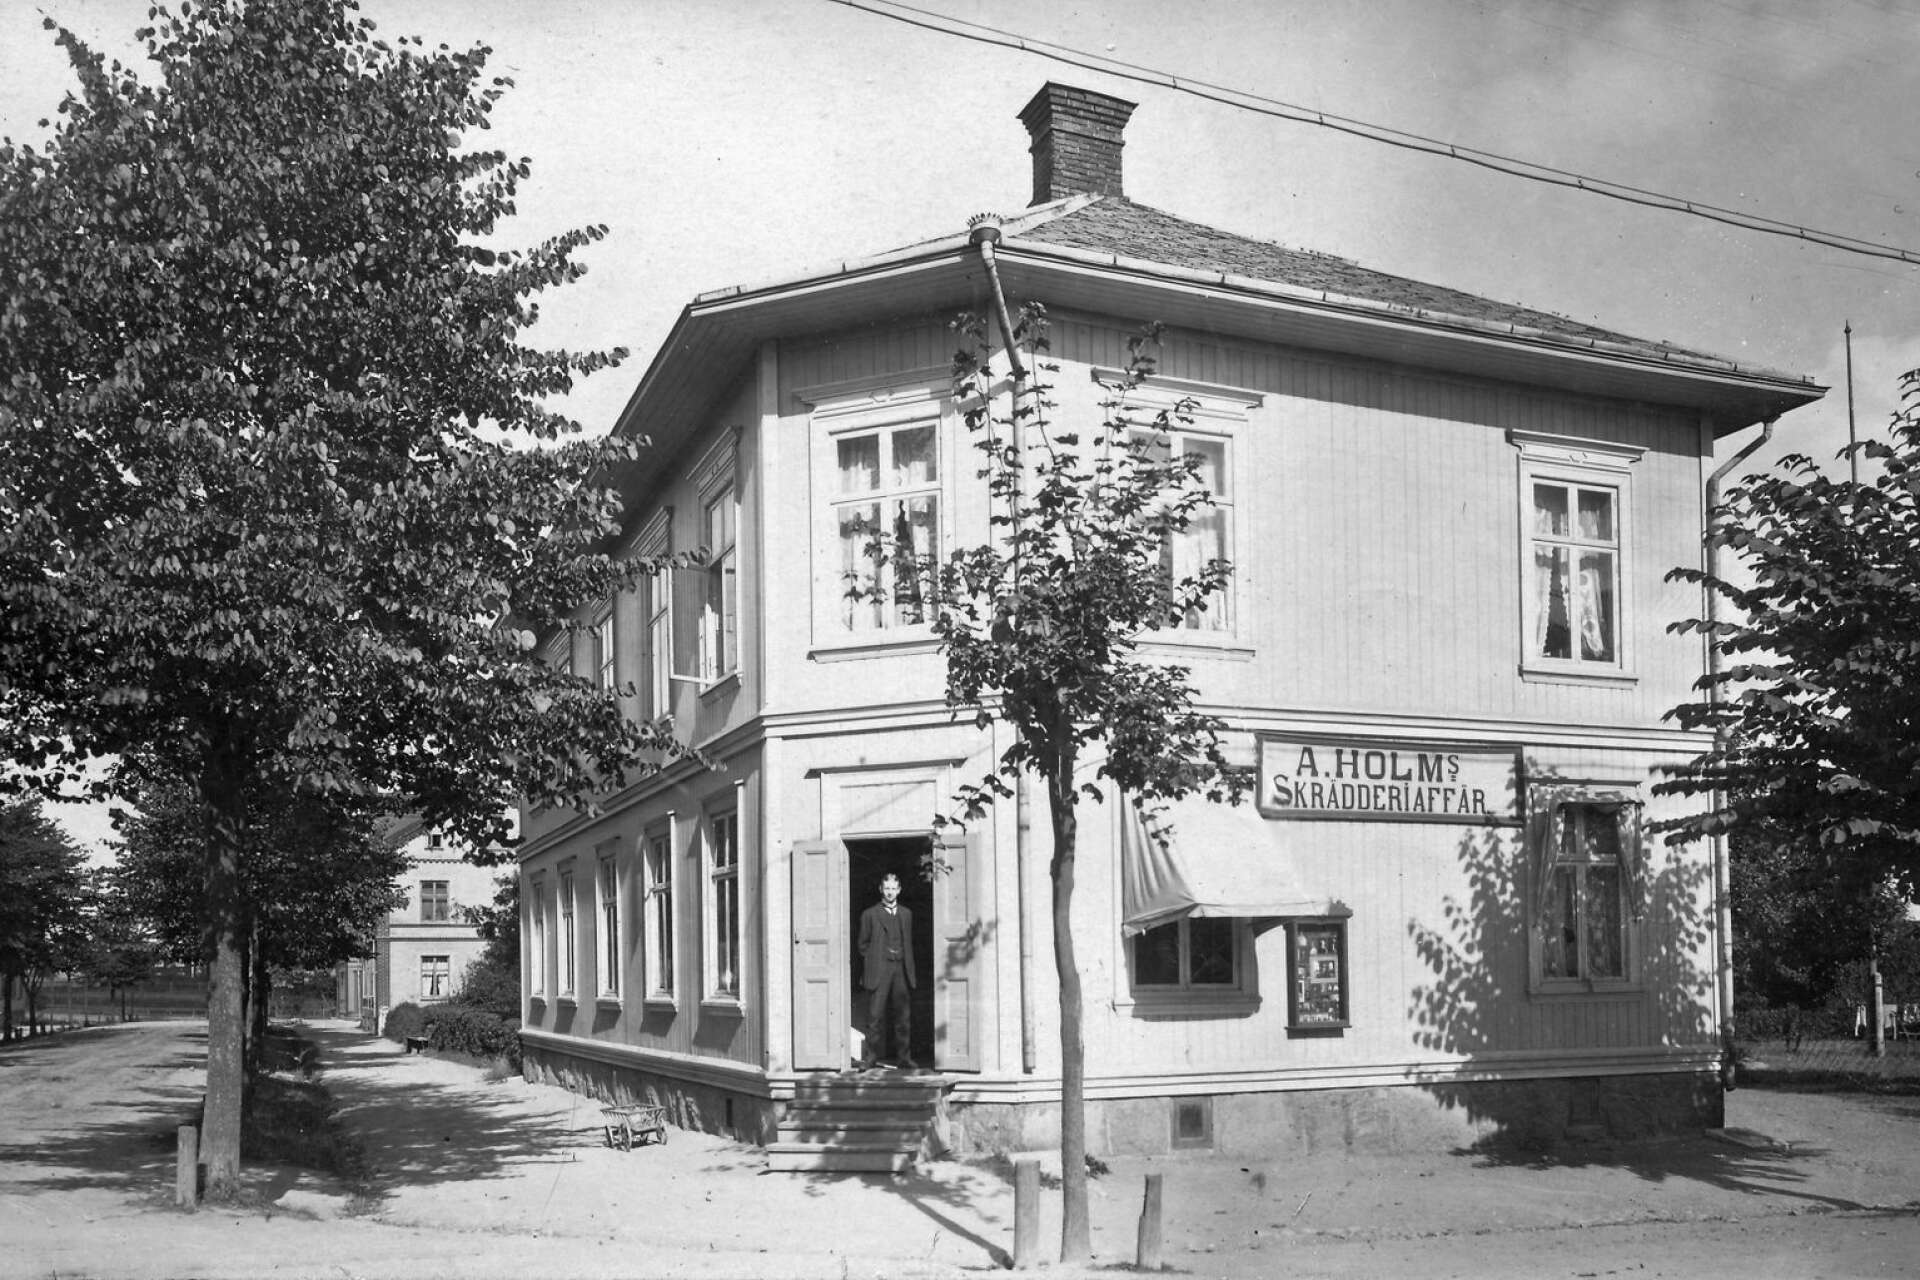 Säffles första postkontor låg i ett hus i hörnet av Billerudsgatan och Västra Storgatan. Posten flyttade därifrån 1896. Där fanns senare bland annat Holms skrädderiaffär, som ses på bilden. 